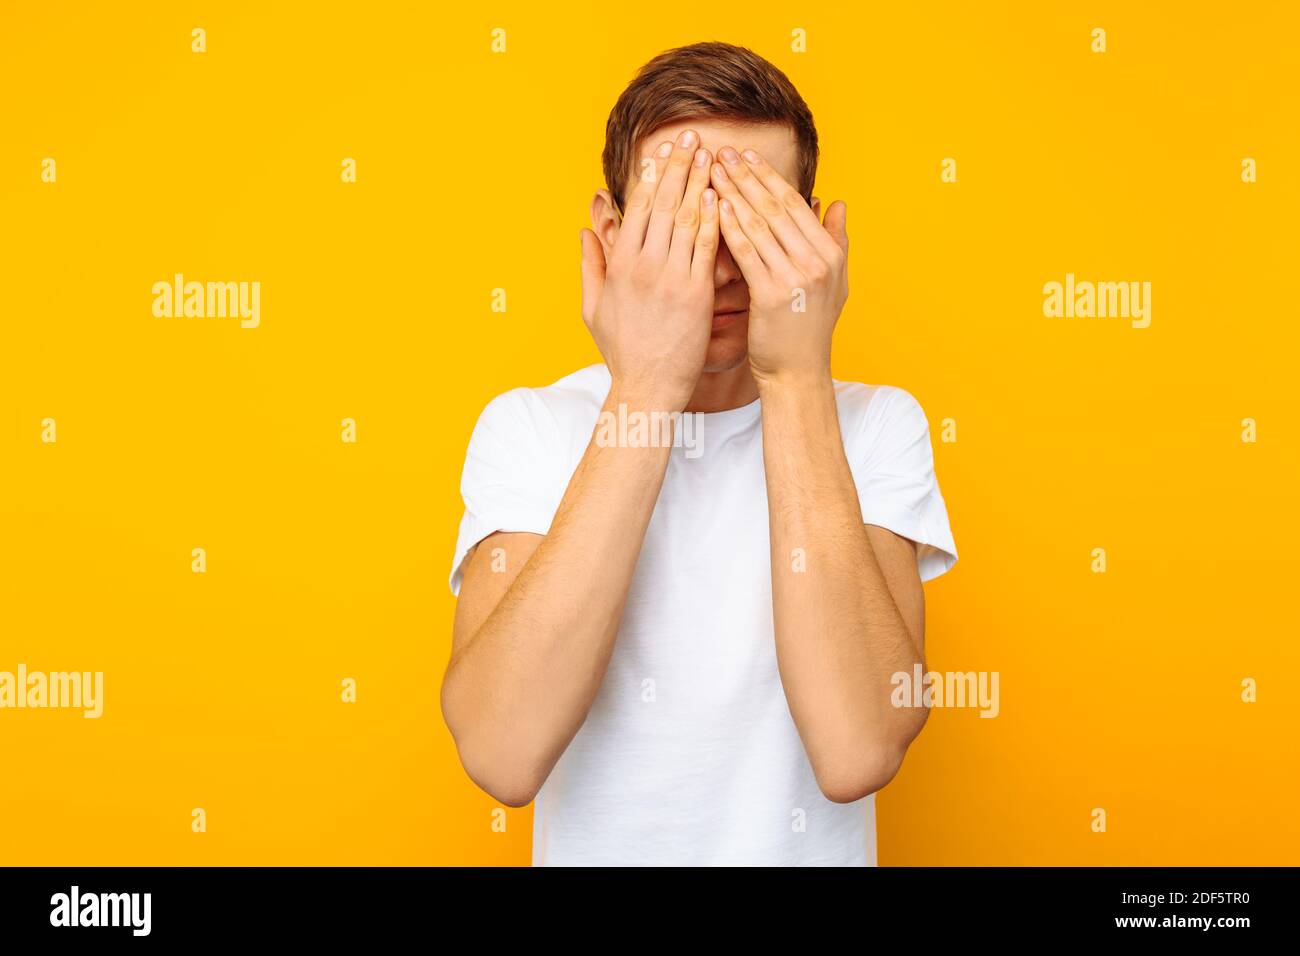 Porträt eines verängstigten Mannes mit Brille, ein Mann in einem weißen T-Shirt, schloss seine Augen mit den Händen aus Angst, auf einem gelben Hintergrund Stockfoto